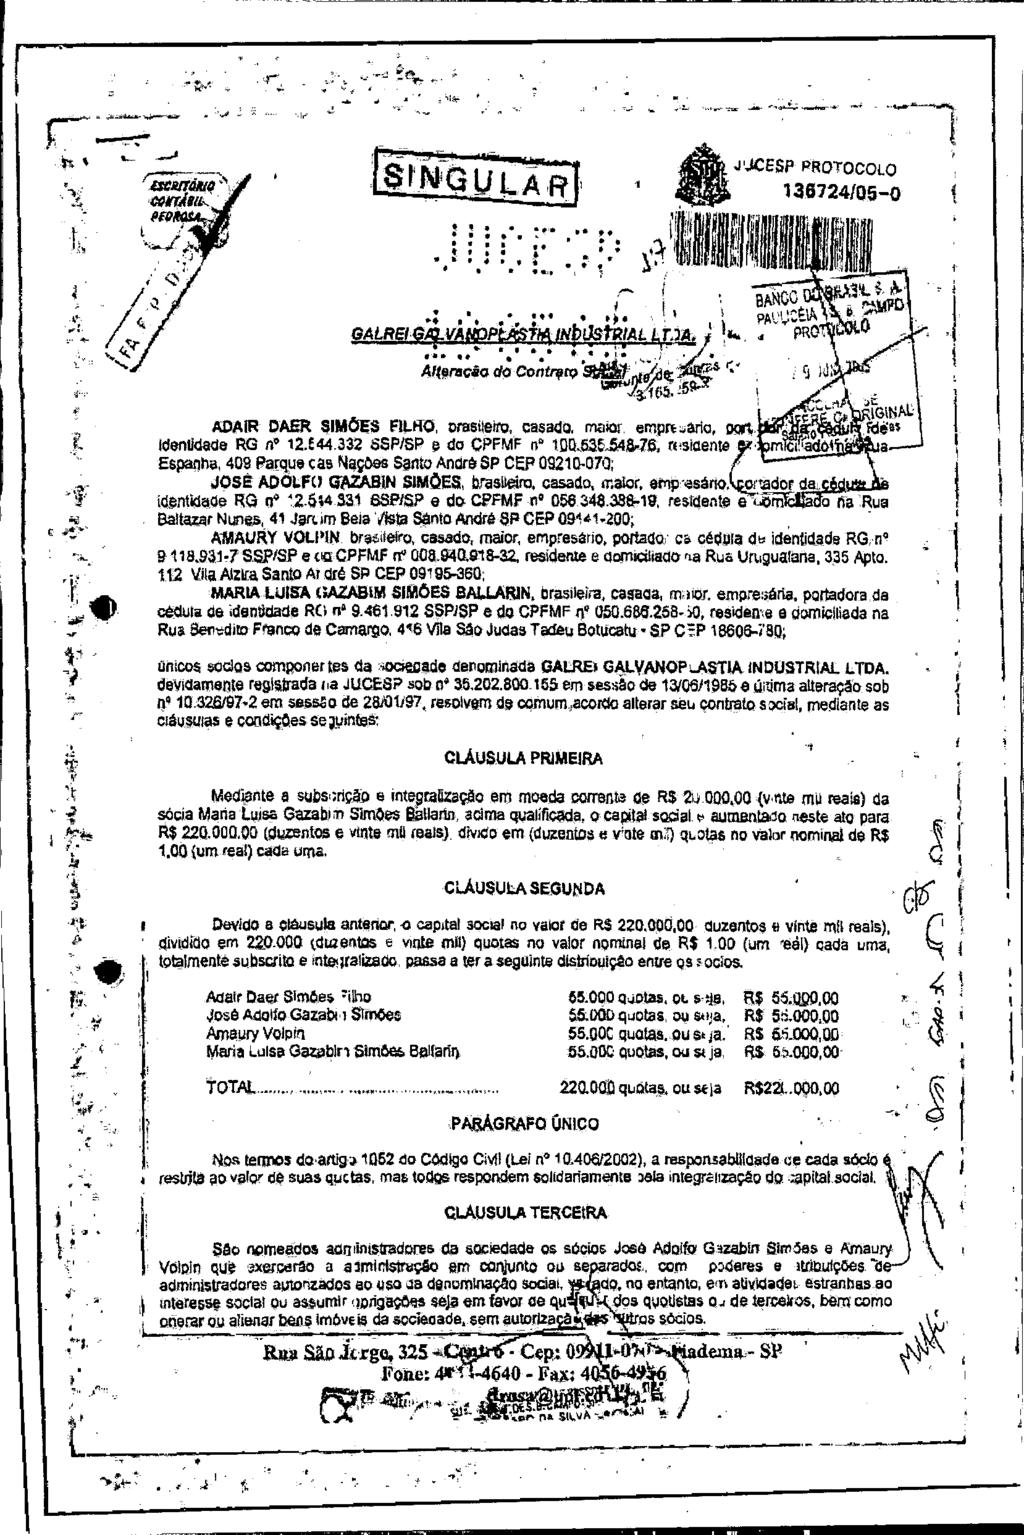 fls. 56 Este documento é cópia do original, assinado digitalmente por EDUARDO JANZON AVALLONE NOGUEIRA e Tribunal de Justica Sao Paulo, protocolado em 16/07/2015 às 09:43, sob o número